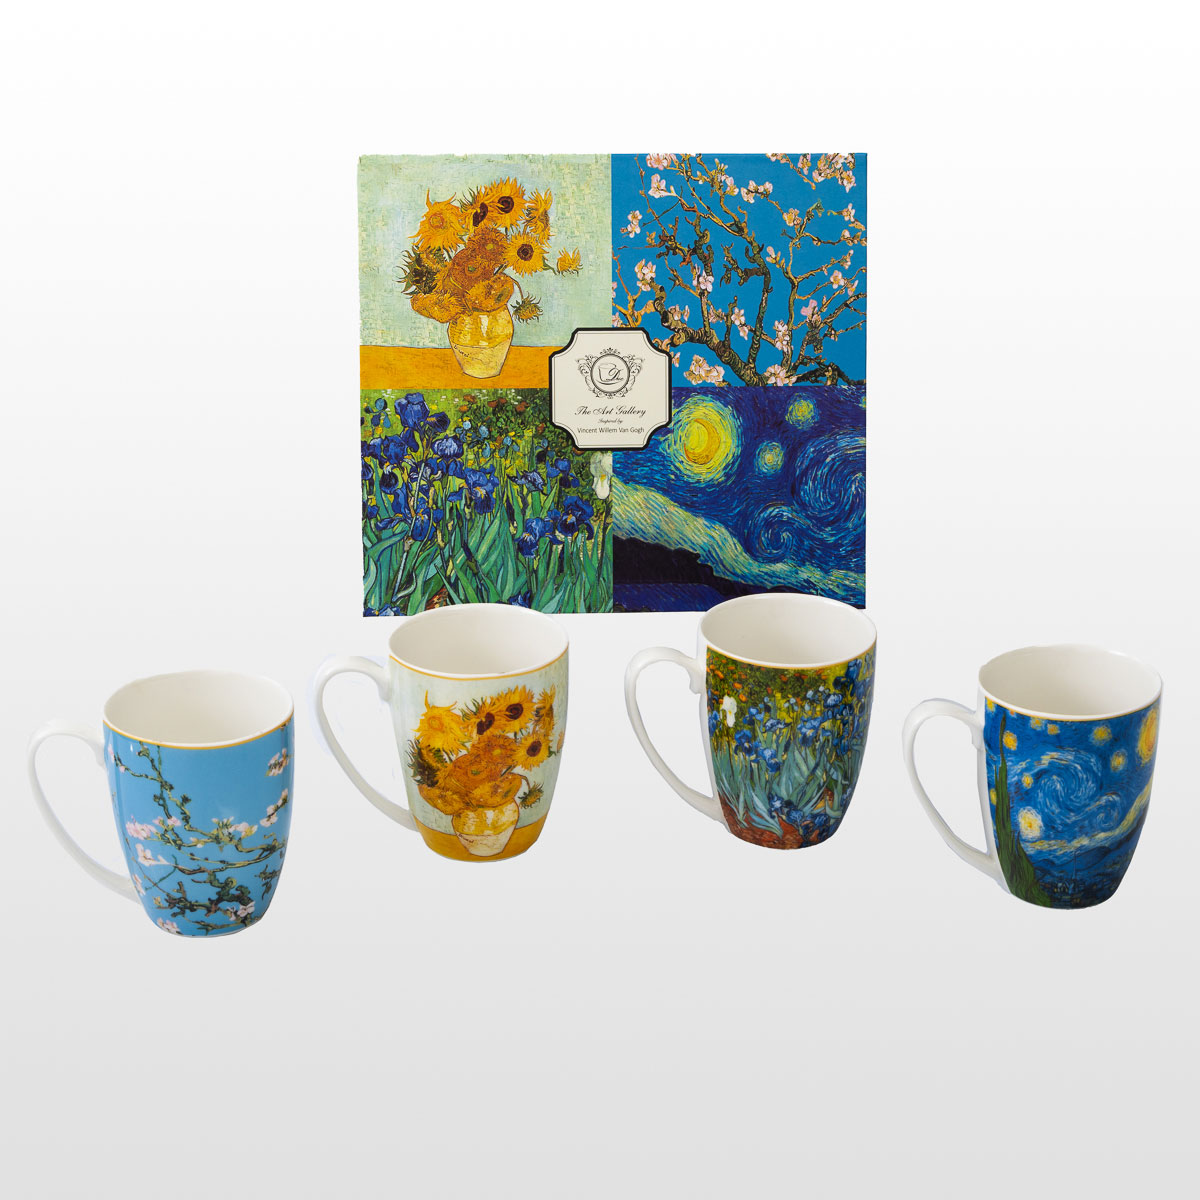 4 tazas Vincent Van Gogh (en una caja de regalo), detalle n°1